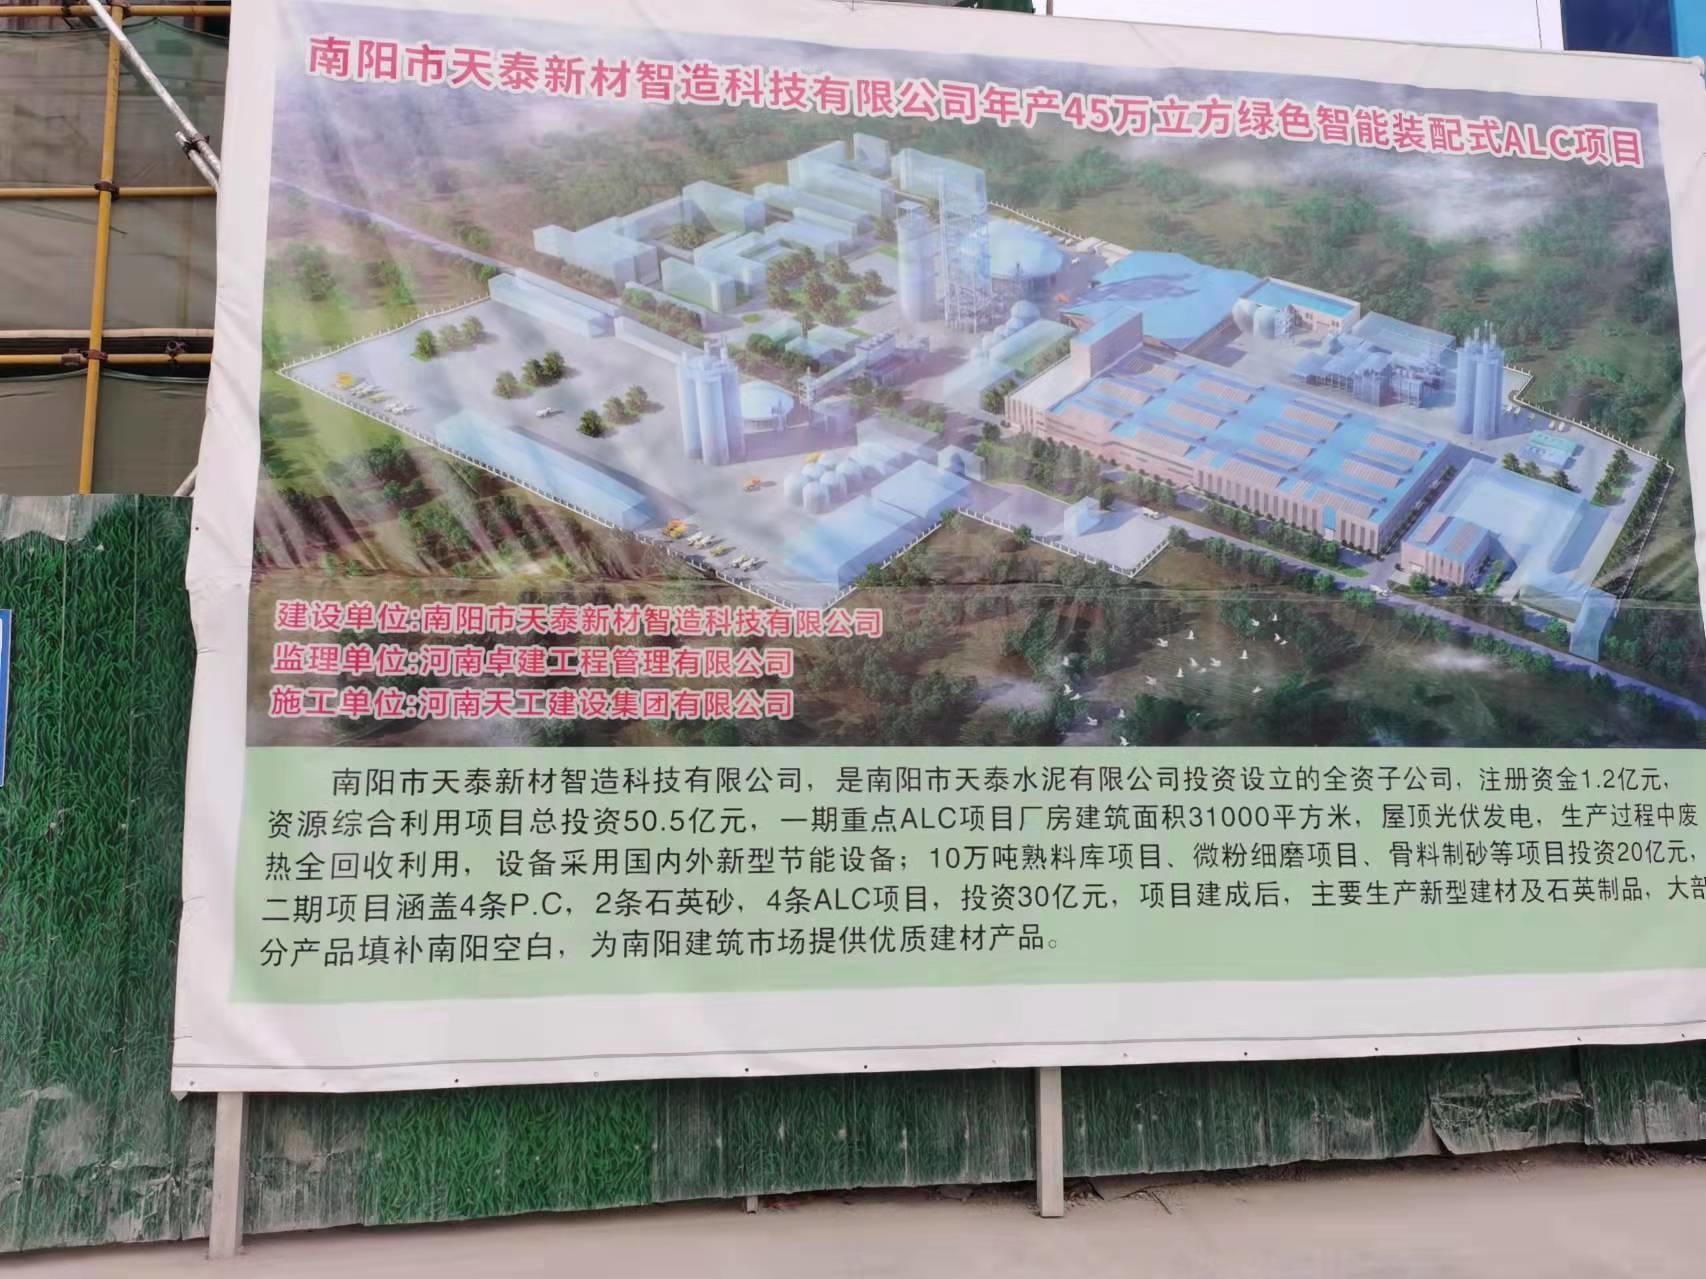 【在建项目信息】南阳市天泰水泥有限公司年产45万m3绿色智能装配式ALC项目